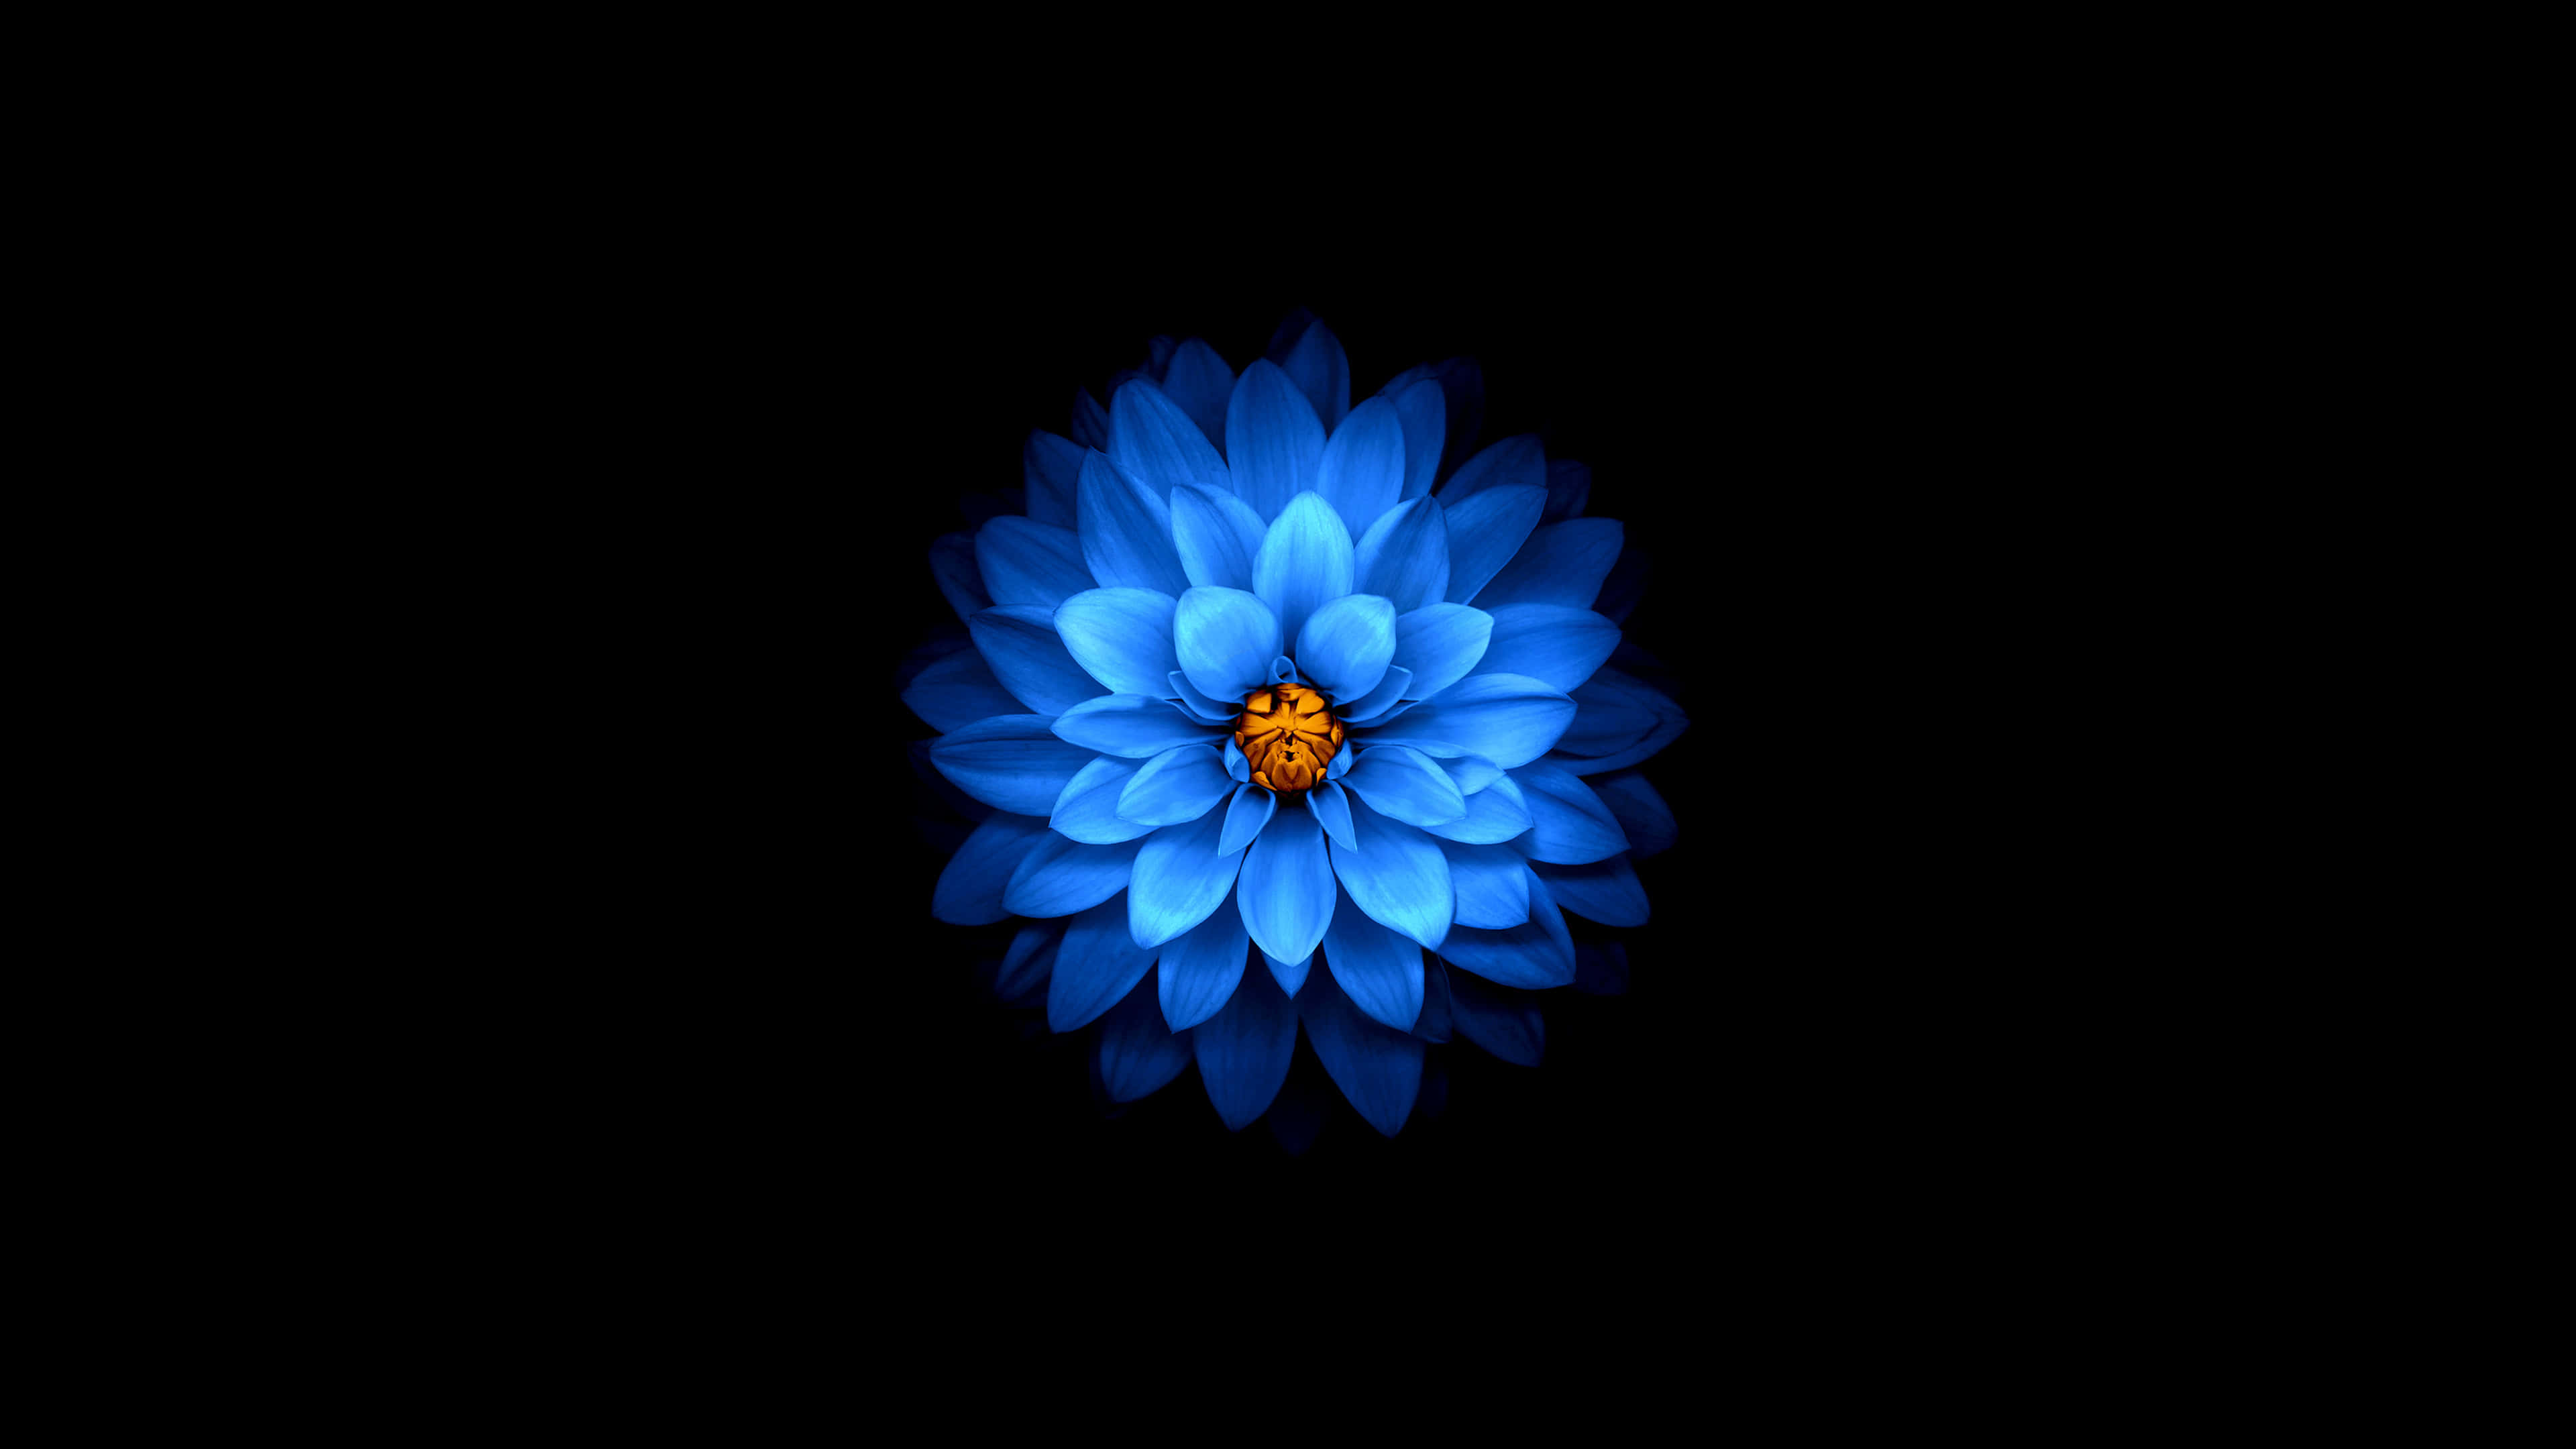 Hình ảnh hoa sen xanh đẹp: Những bức ảnh về hoa sen xanh đẹp luôn khiến cho mọi người thích thú và bị cuốn hút bởi vẻ đẹp thần tiên của nó. Hãy đến với chúng tôi để chiêm ngưỡng những hình ảnh tuyệt vời về hoa sen xanh đẹp.